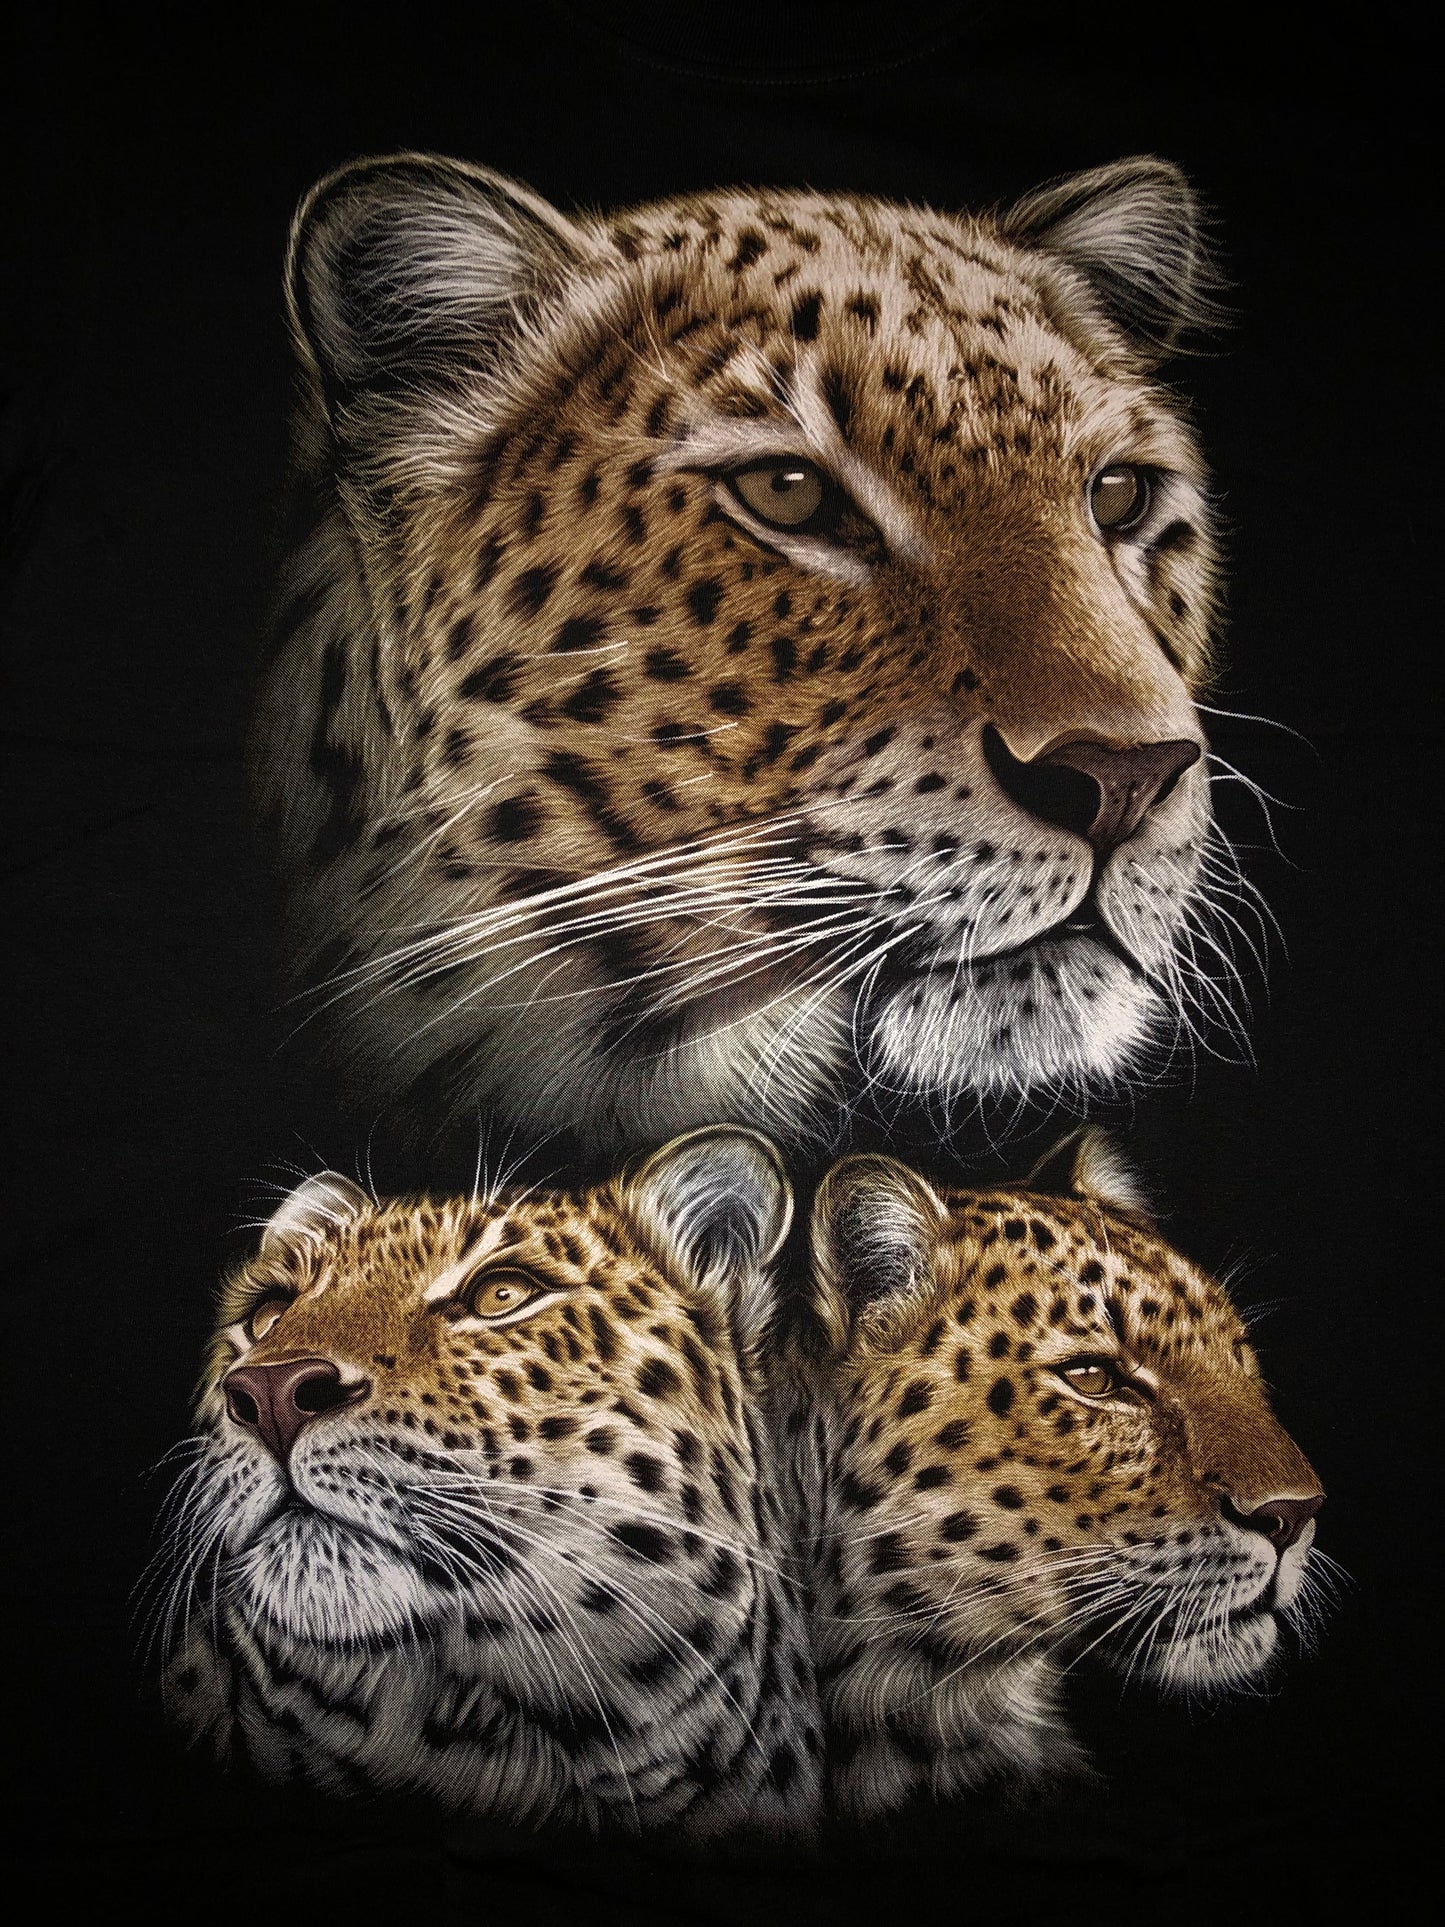 LEO02 - Leopard - Faces